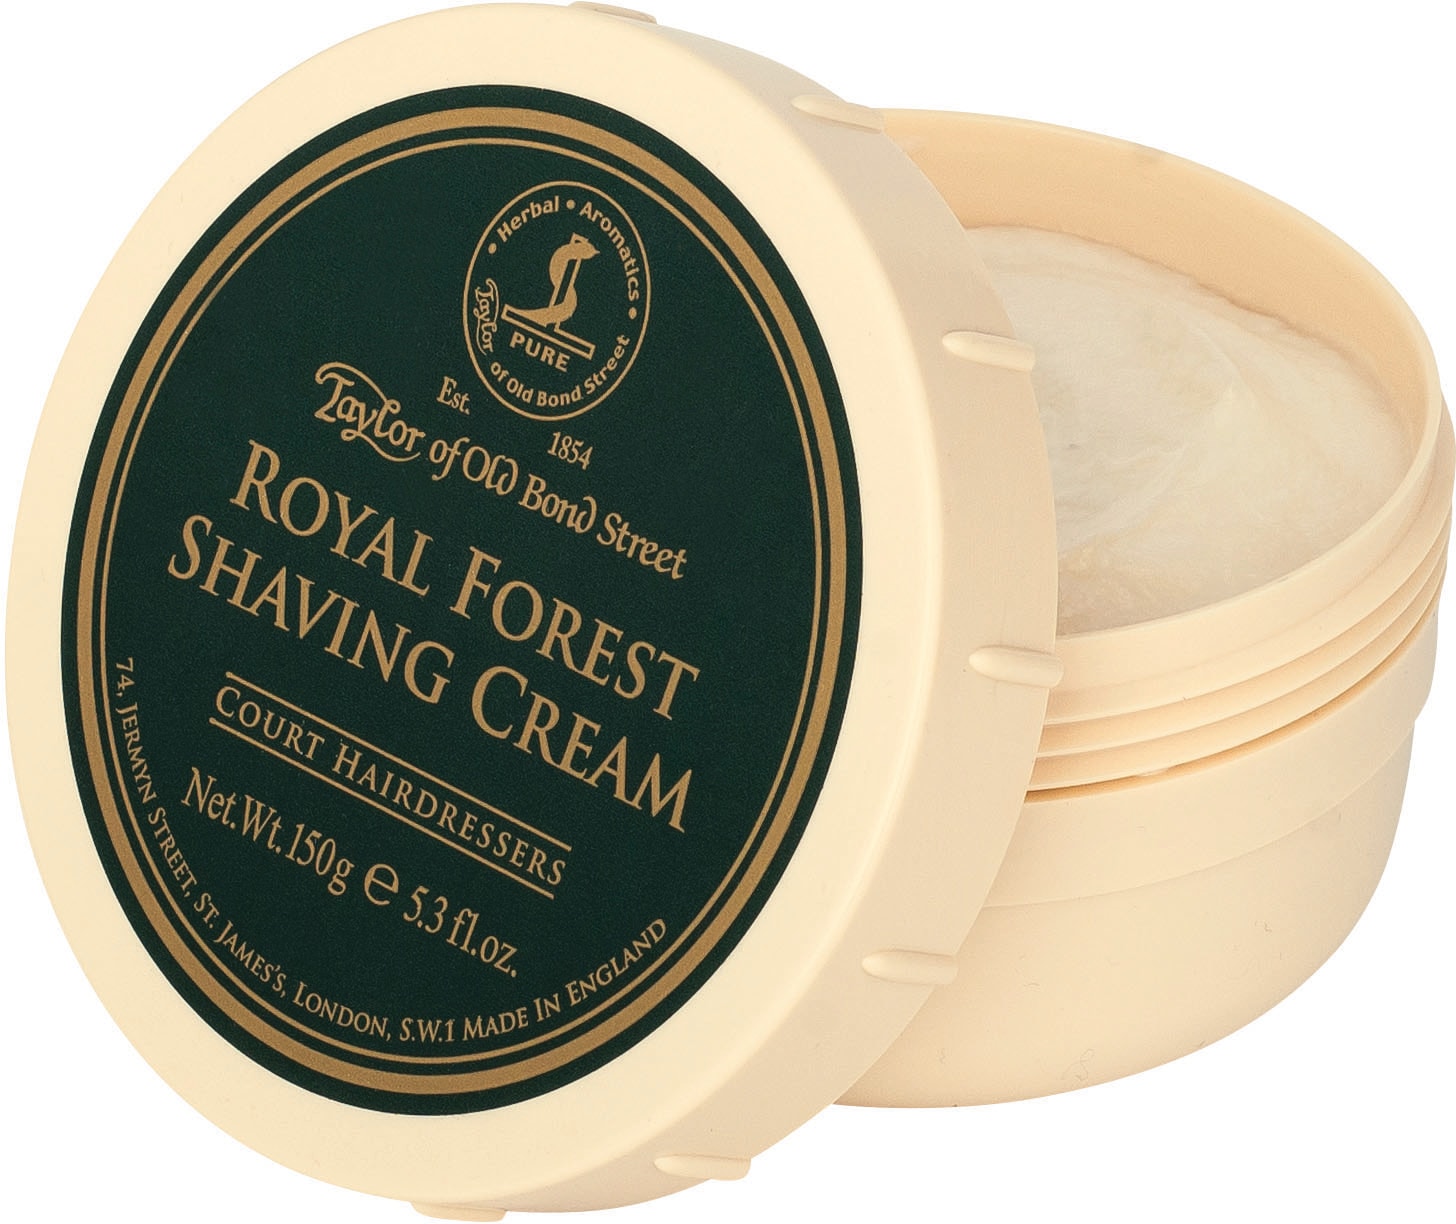 Rasiercreme »Shaving Cream Royal Forest«